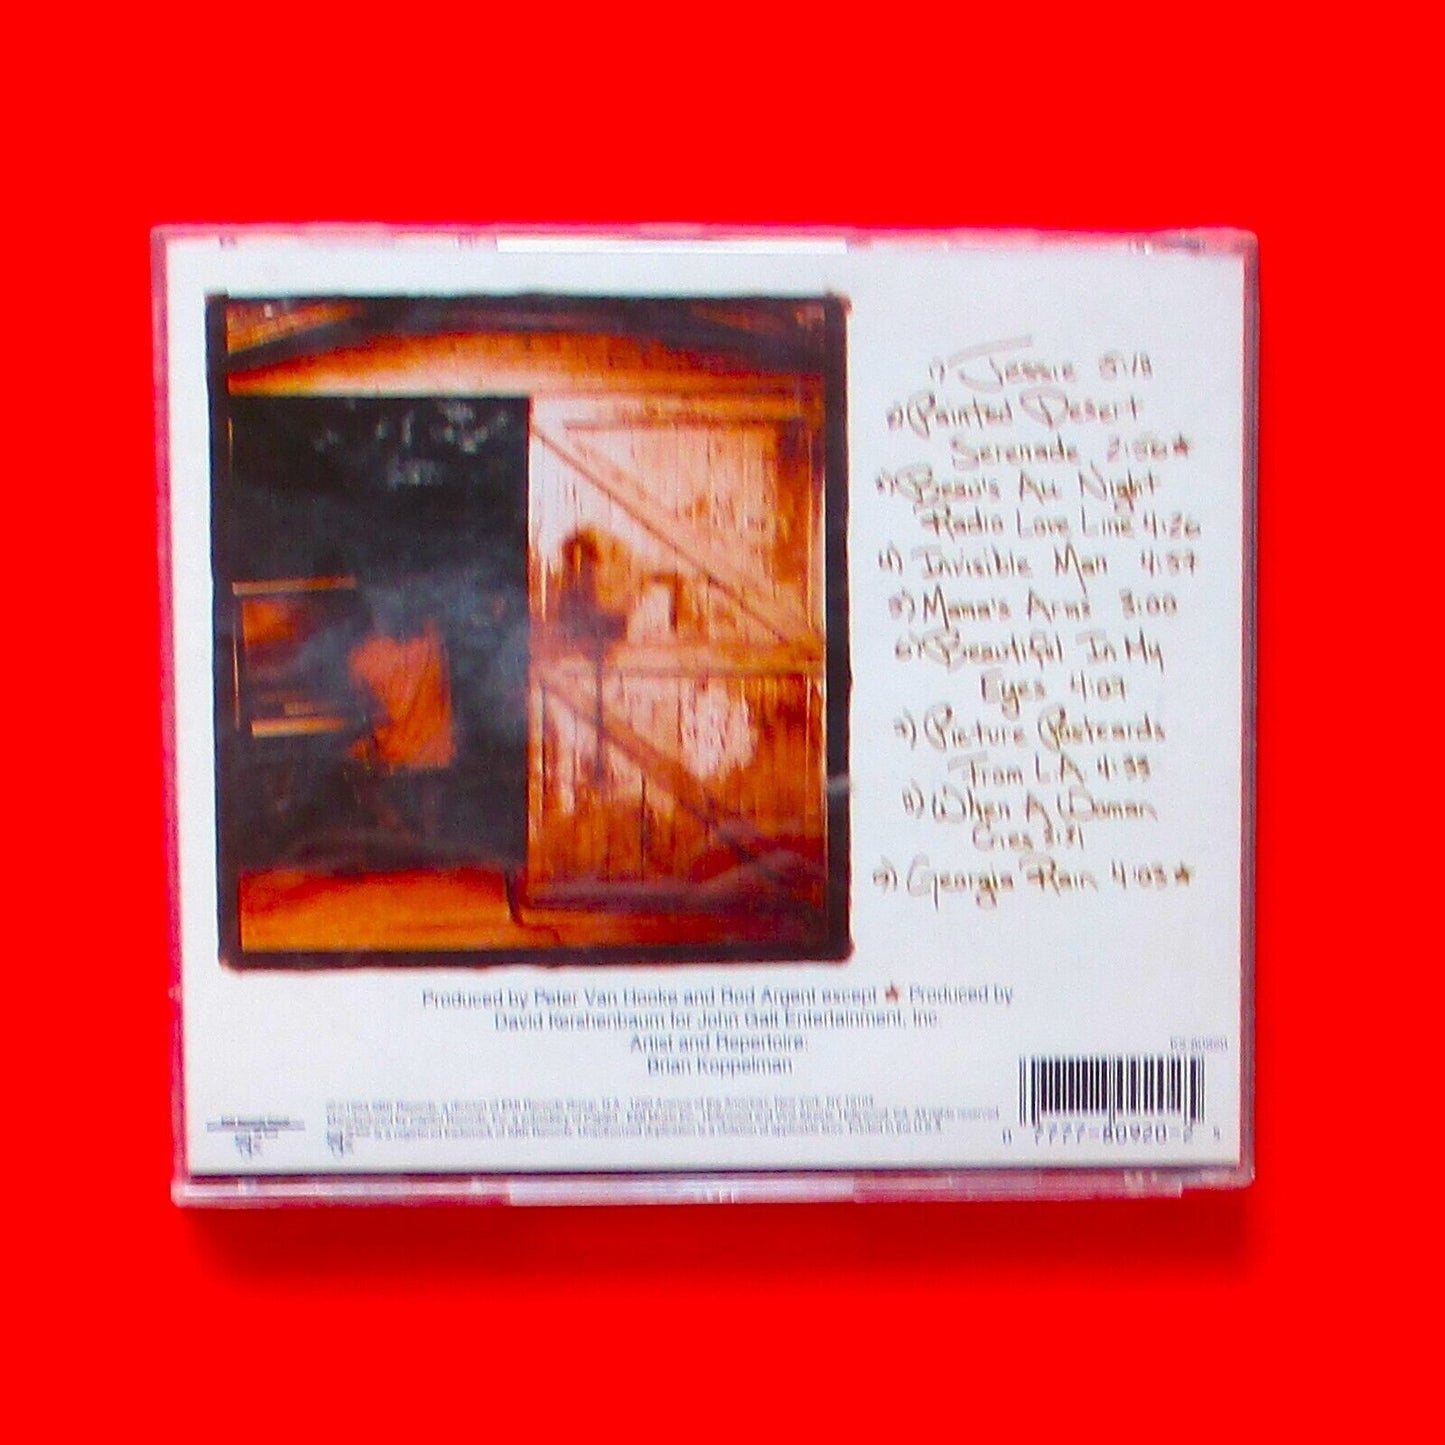 Joshua Kadison ‎Painted Desert Serenade Australian CD Album